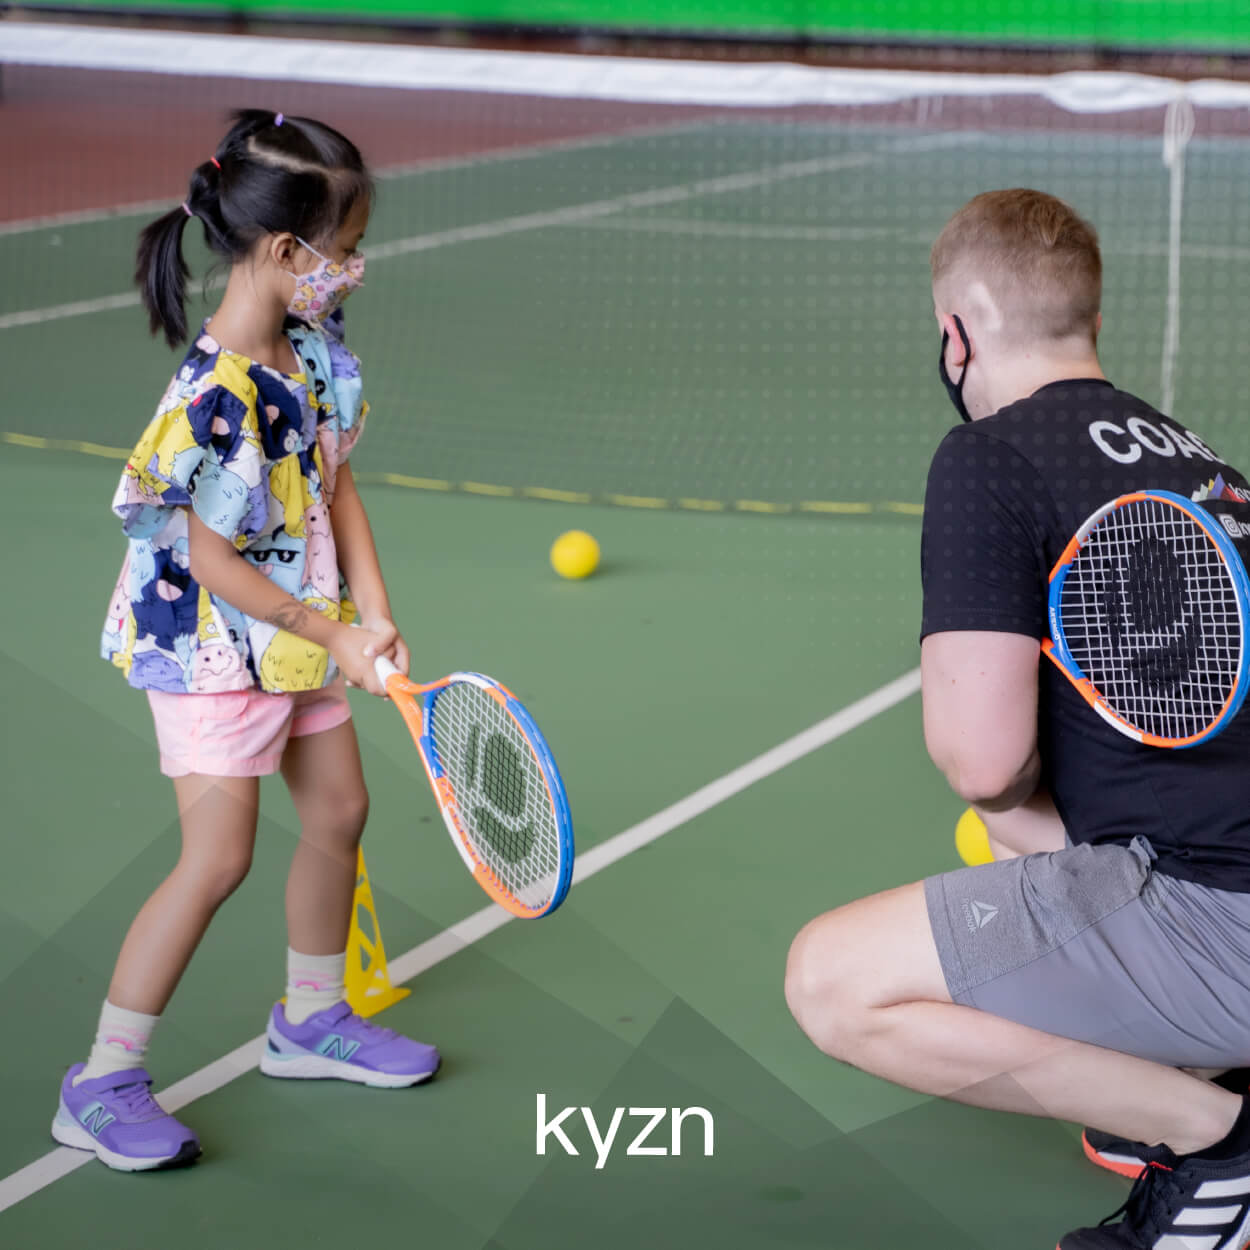 manfaat bermain tenis bagi anak- Tennis Program at KYZN